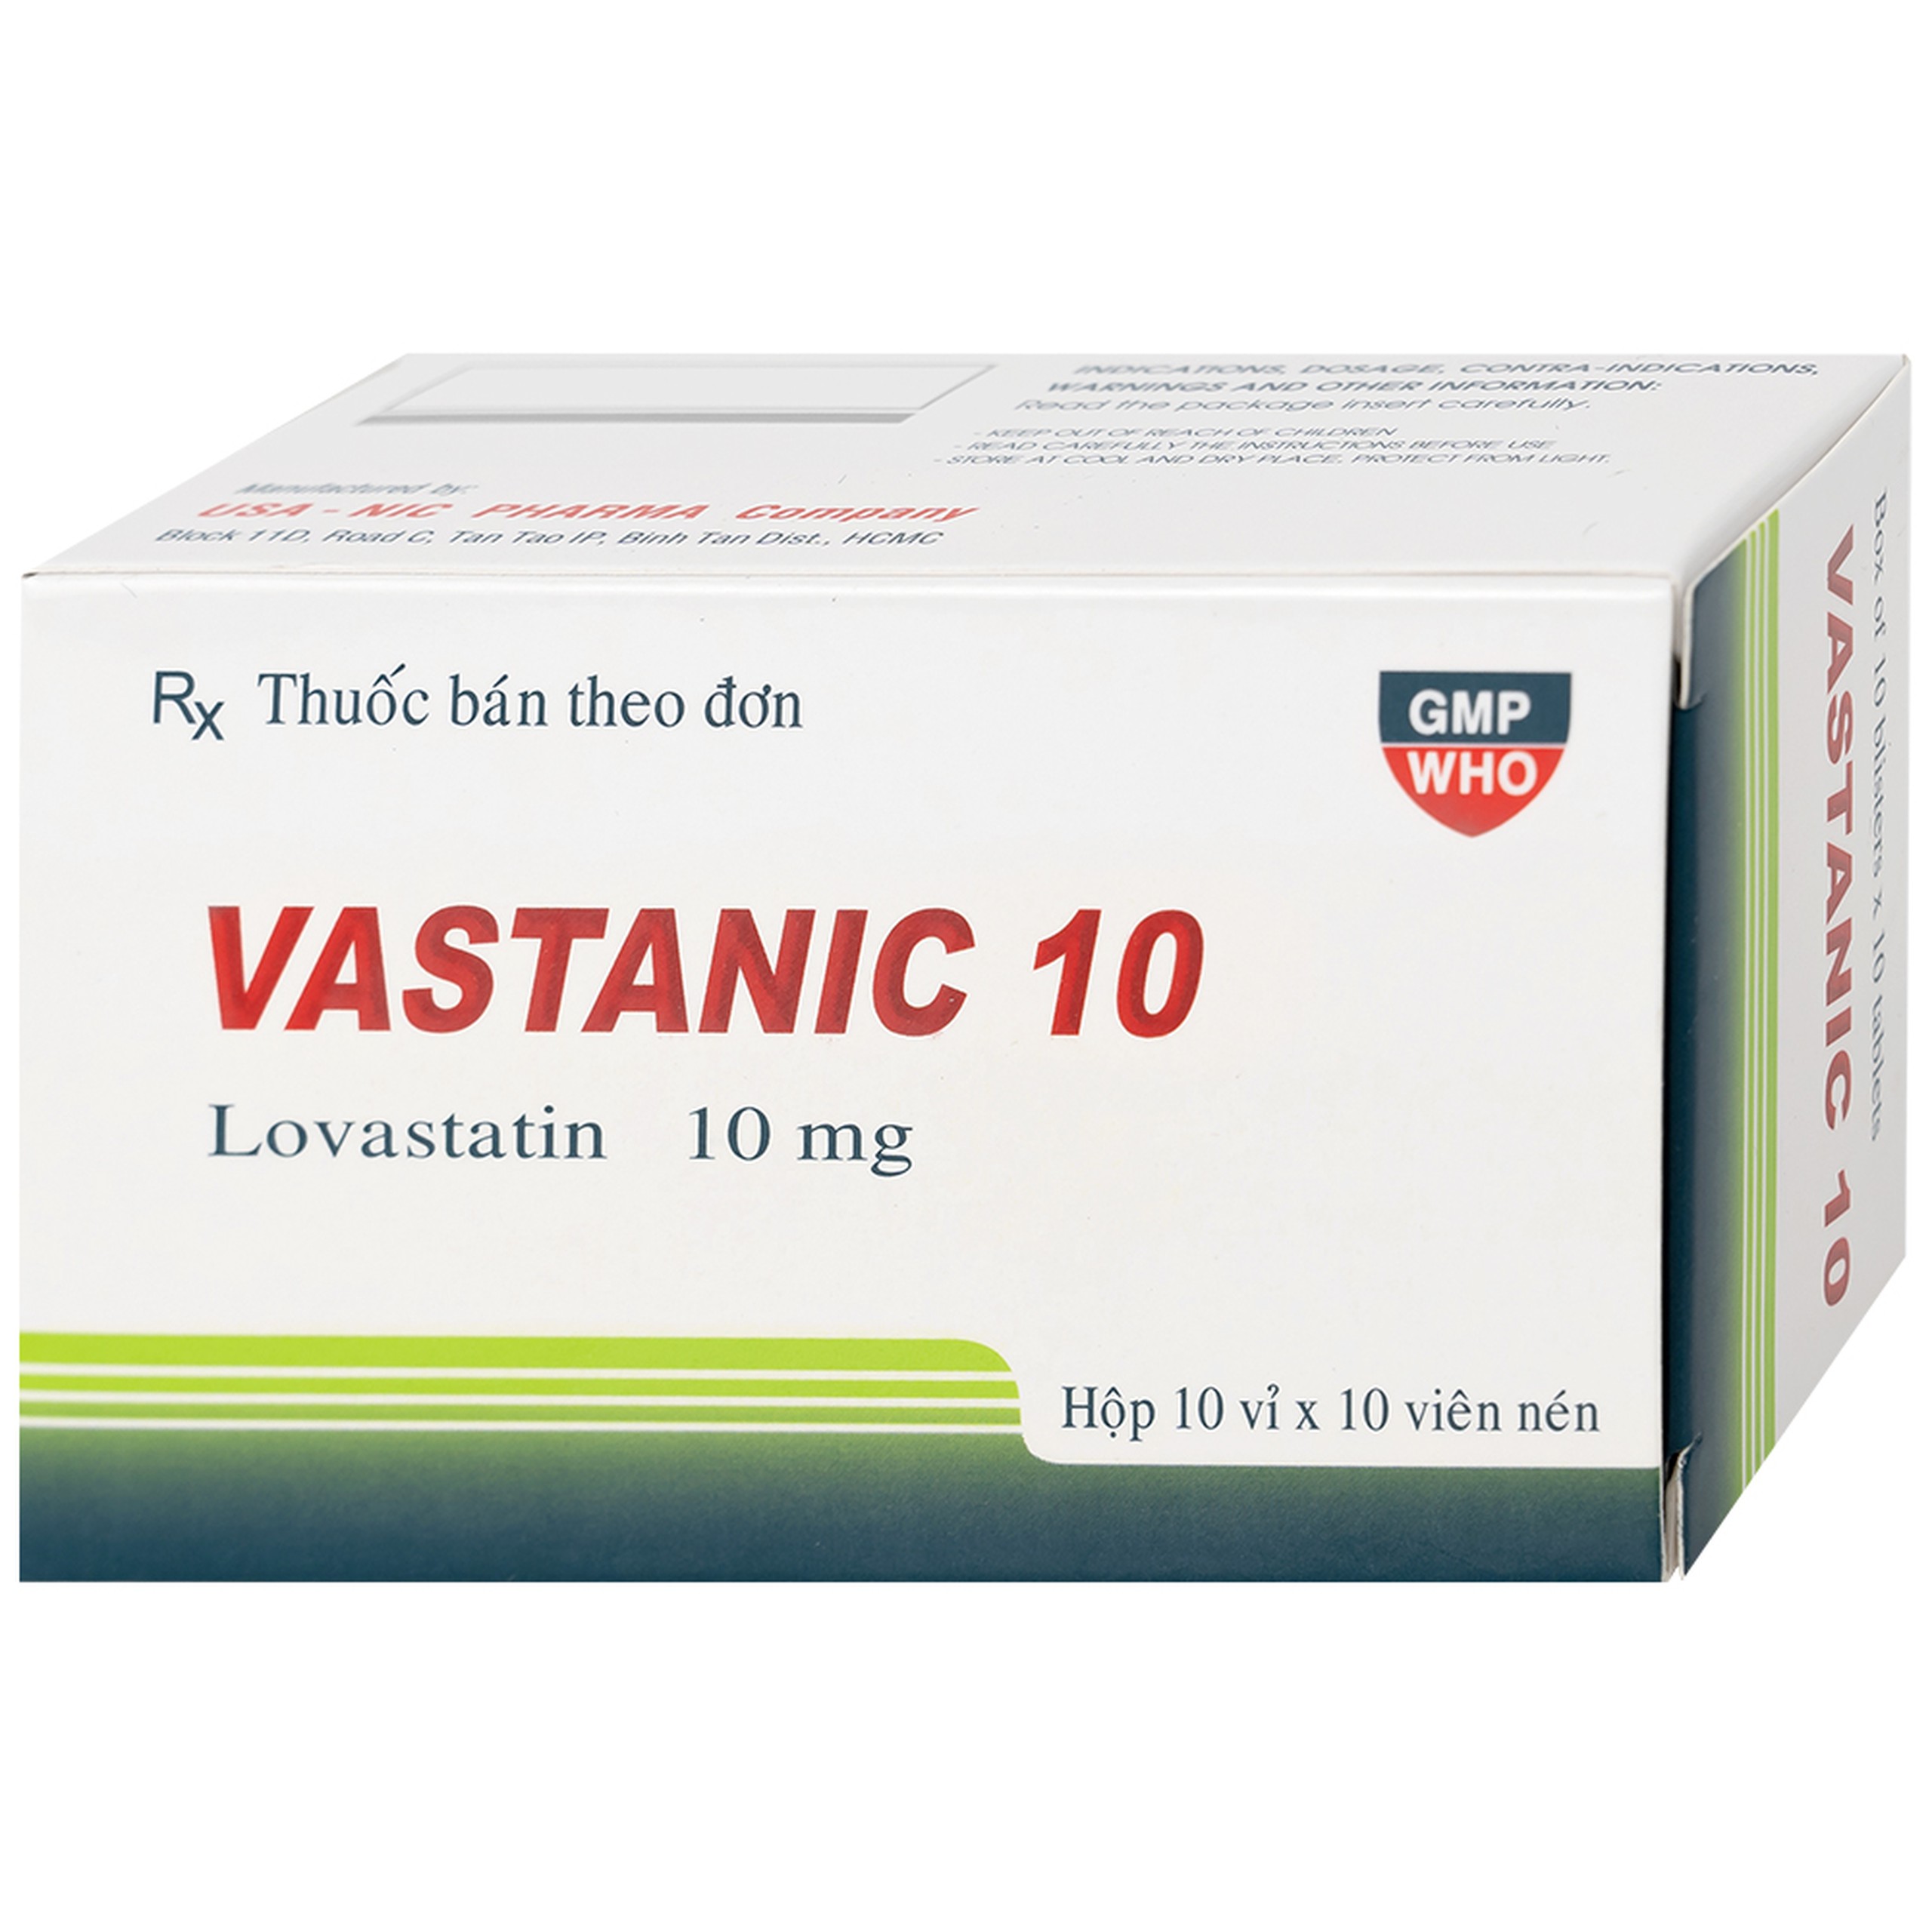 Thuốc Vastanic 10 Usa - Nic Pharma điều trị rối loạn lipid, làm giảm cholesterol (10 vỉ x 10 viên)